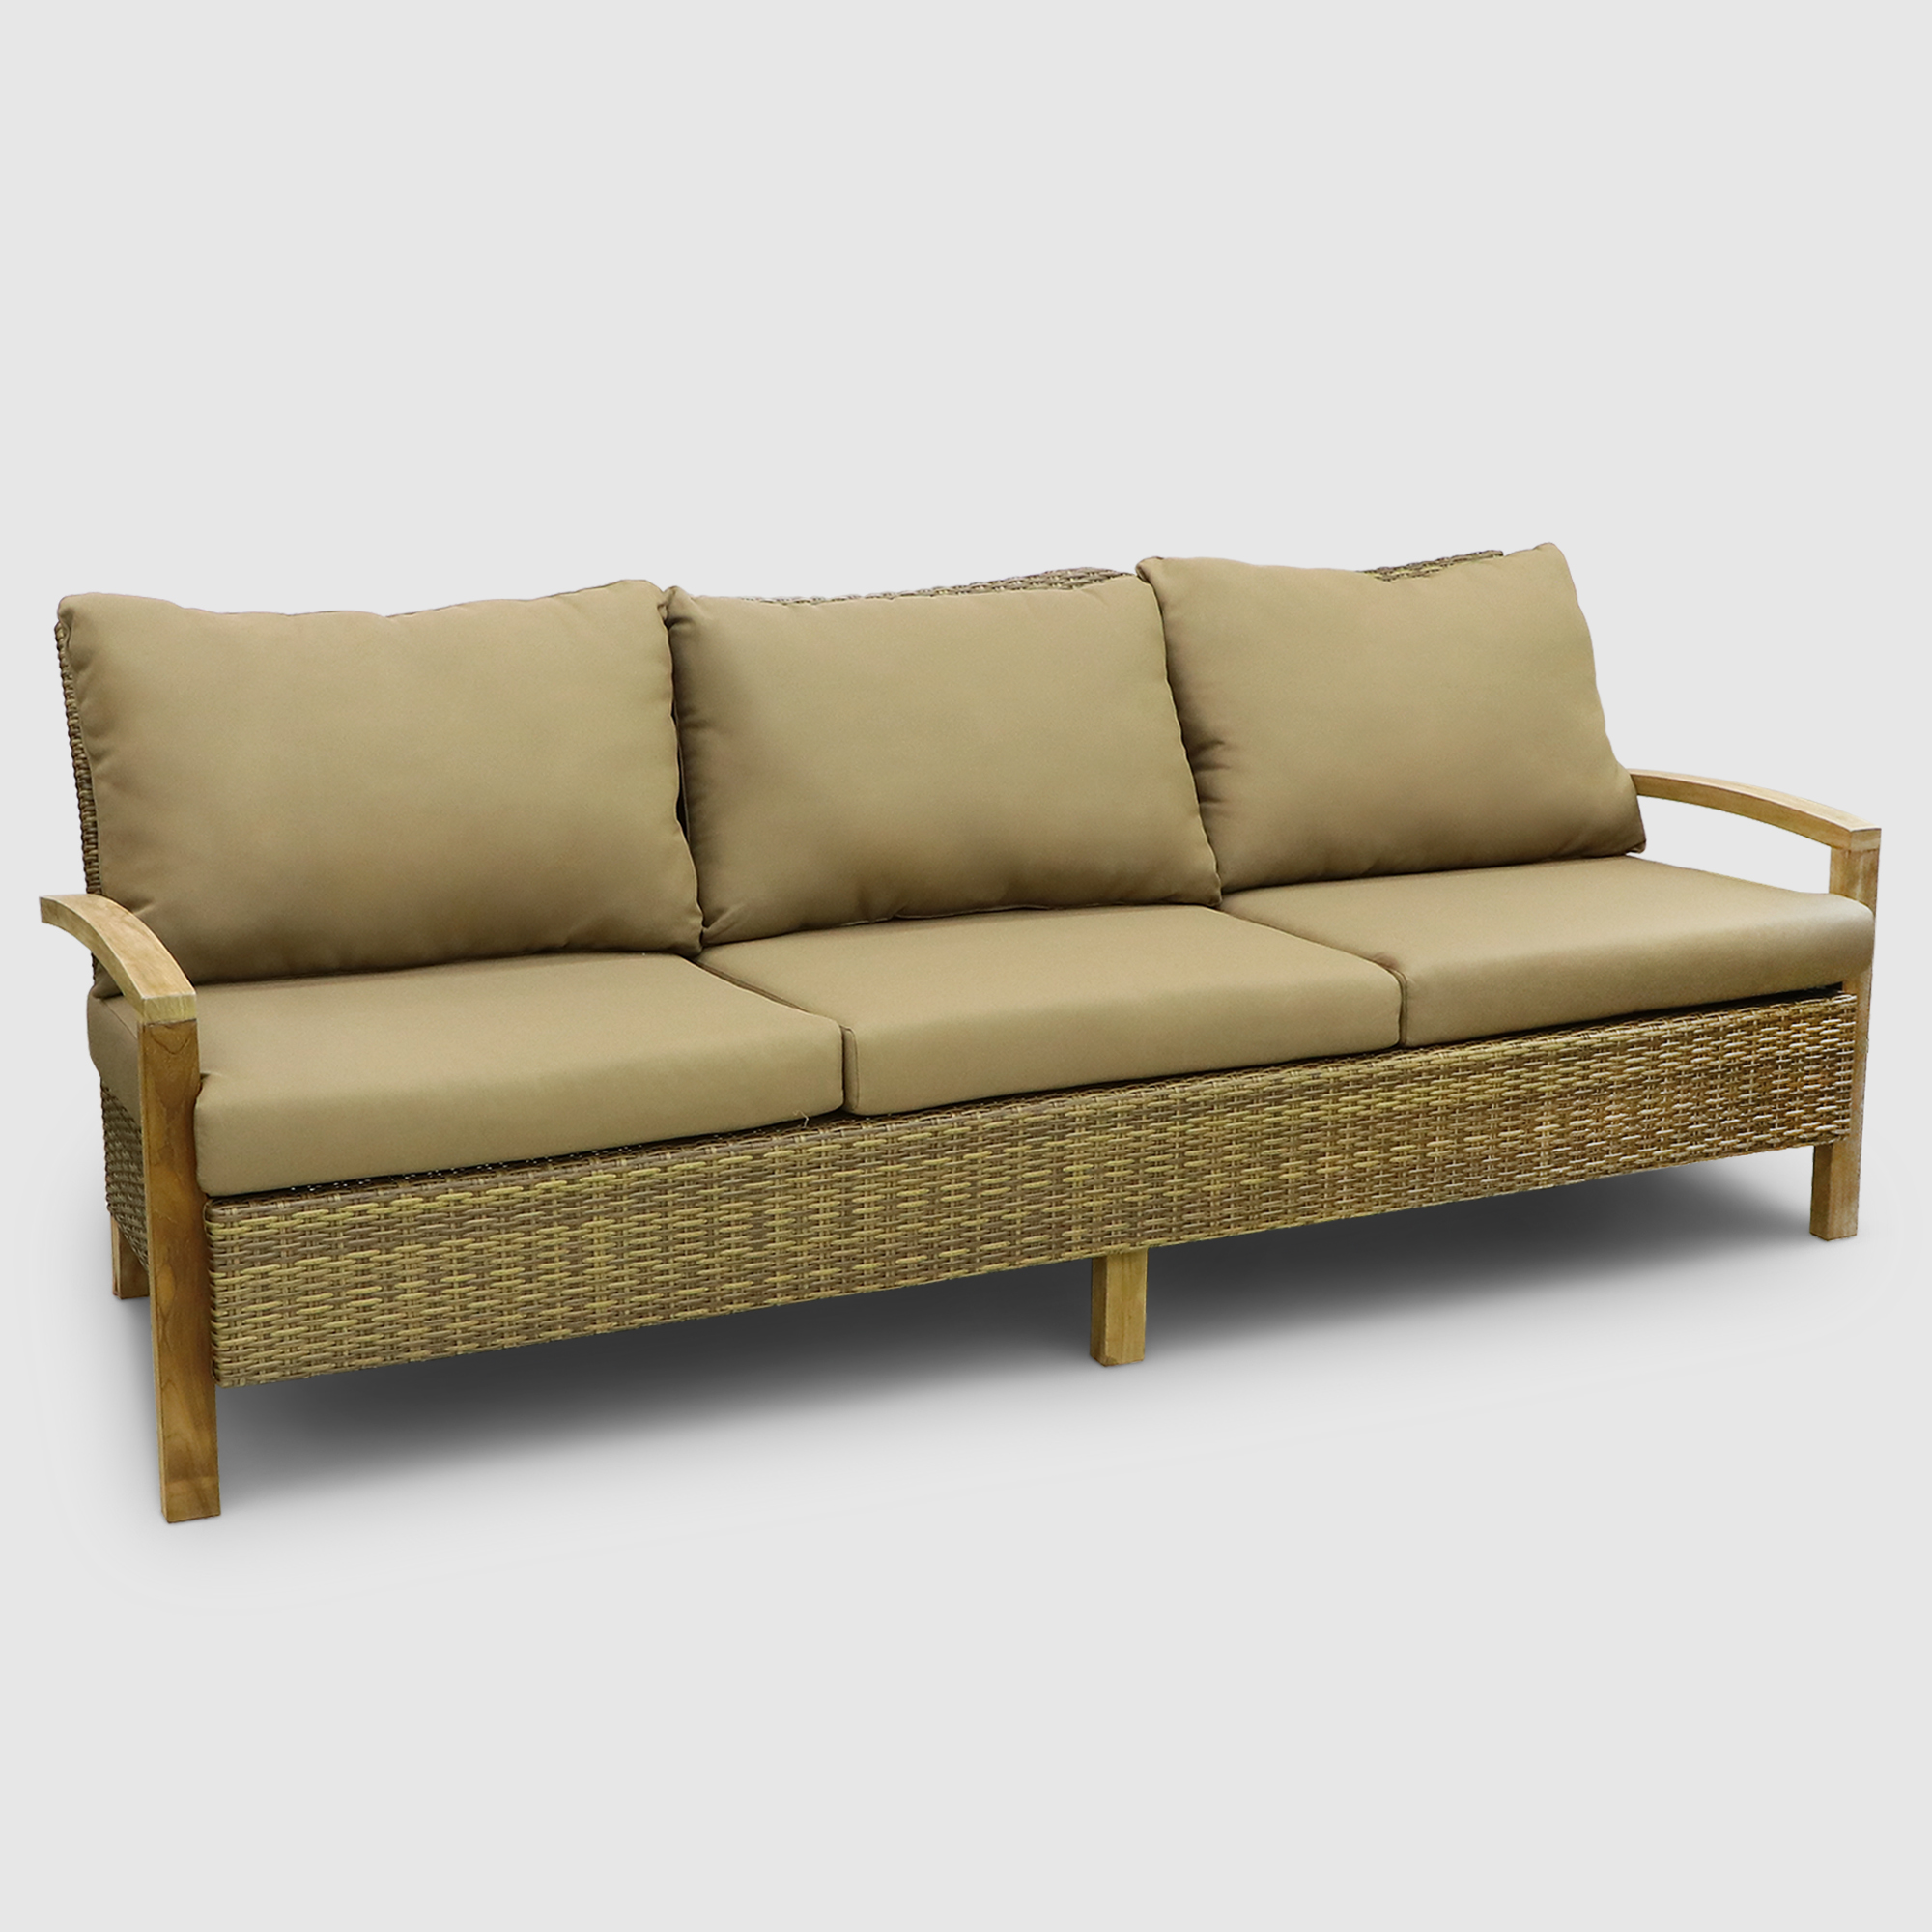 Комплект мебели Jepara Bastian 5 предметов, цвет светло-коричневый, размер 240х88х125 - фото 2